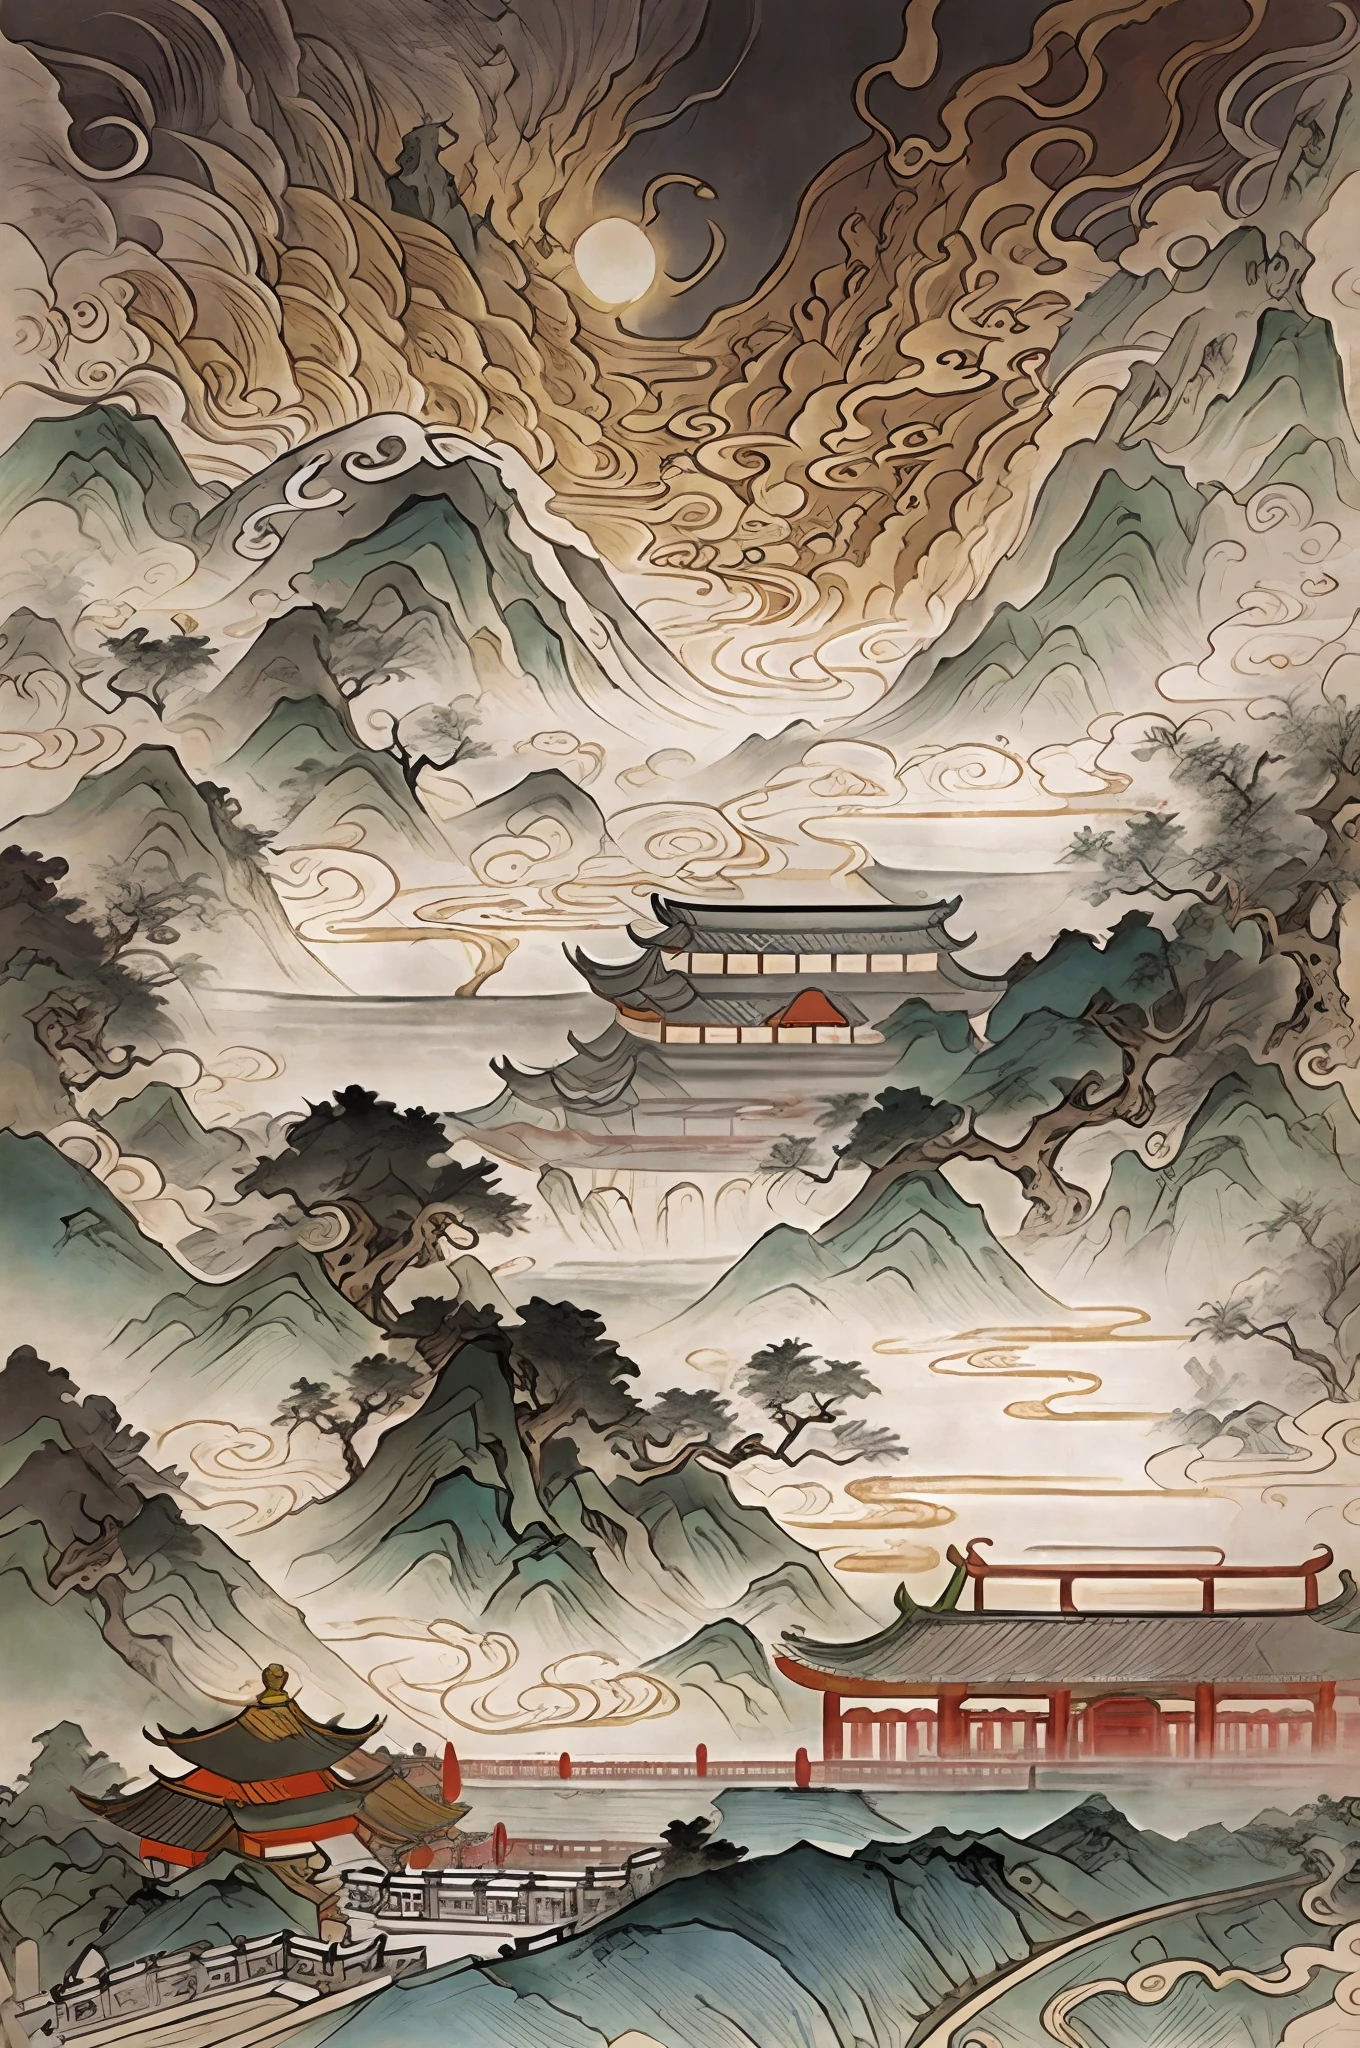 Dibujar un paisaje，antiguas leyendas chinas，Estilo deprimido y enojado.，A lo lejos hay una montaña y una pagoda., inspirado en Itō Jakuchū, paisaje chino, papel pintado oriental